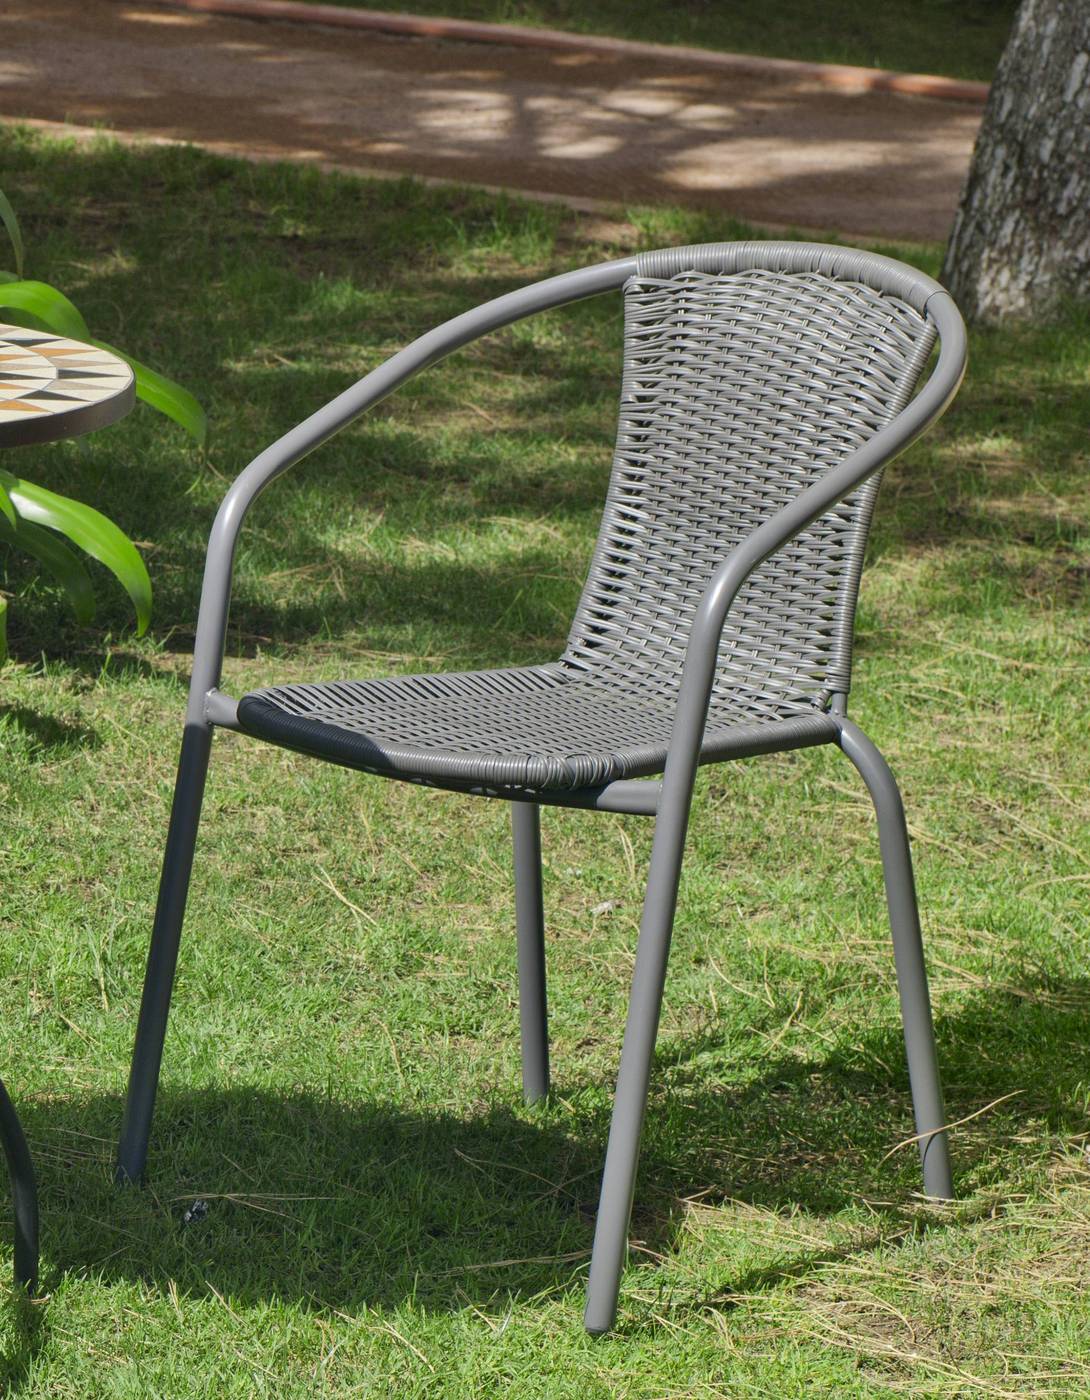 Set Acero Santana-60 - Conjunto de acero color antracita: mesa redonda con tablero de cristal templado de 60 cm. + 2 sillones apilables de wicker reforzado